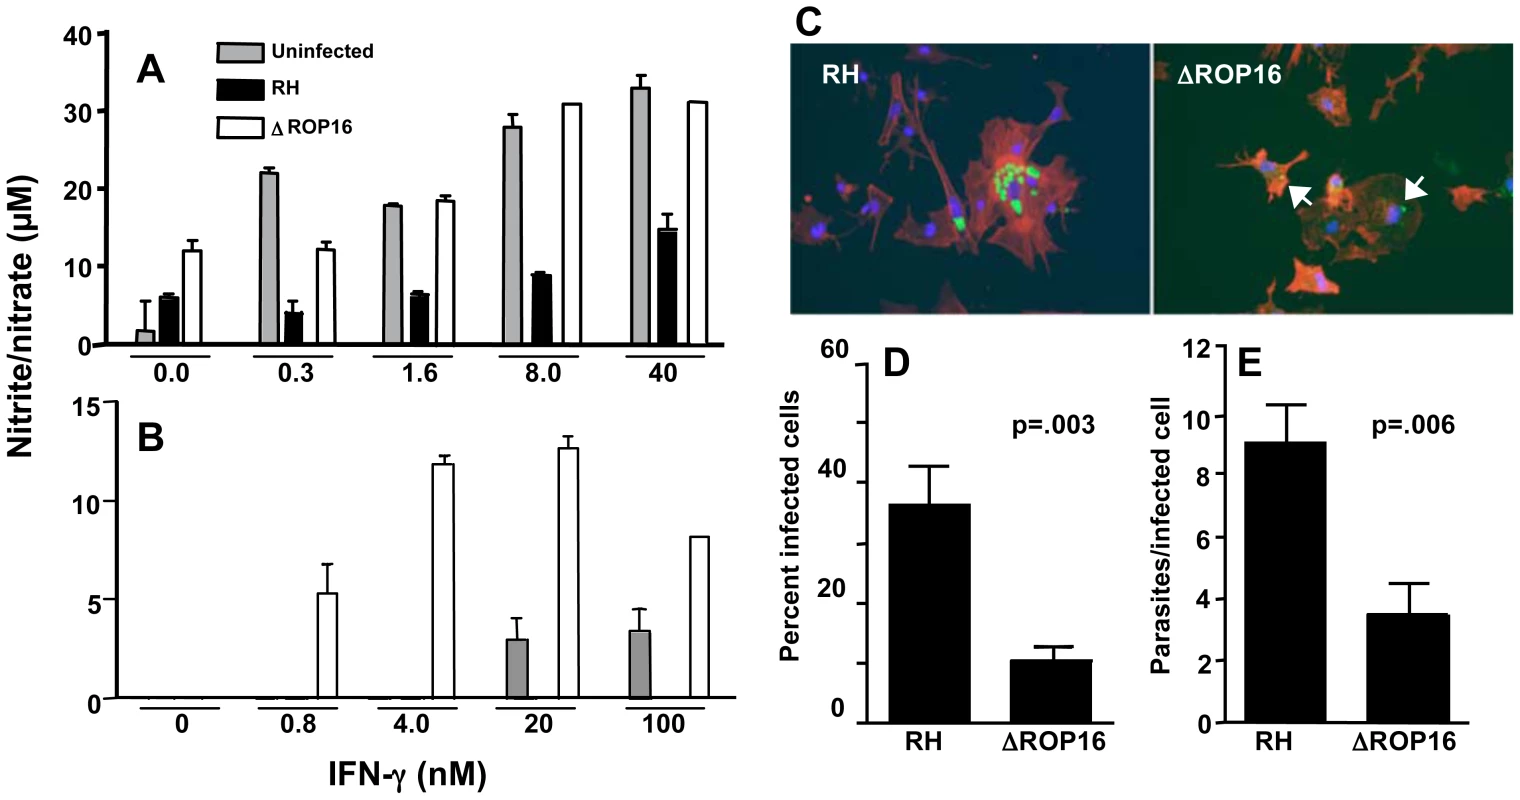 ΔROP16 tachyzoites do not inhibit IFN-γ primed NO production in microglial cells and ΔROP16 parasites potentiate production in astrocytes.